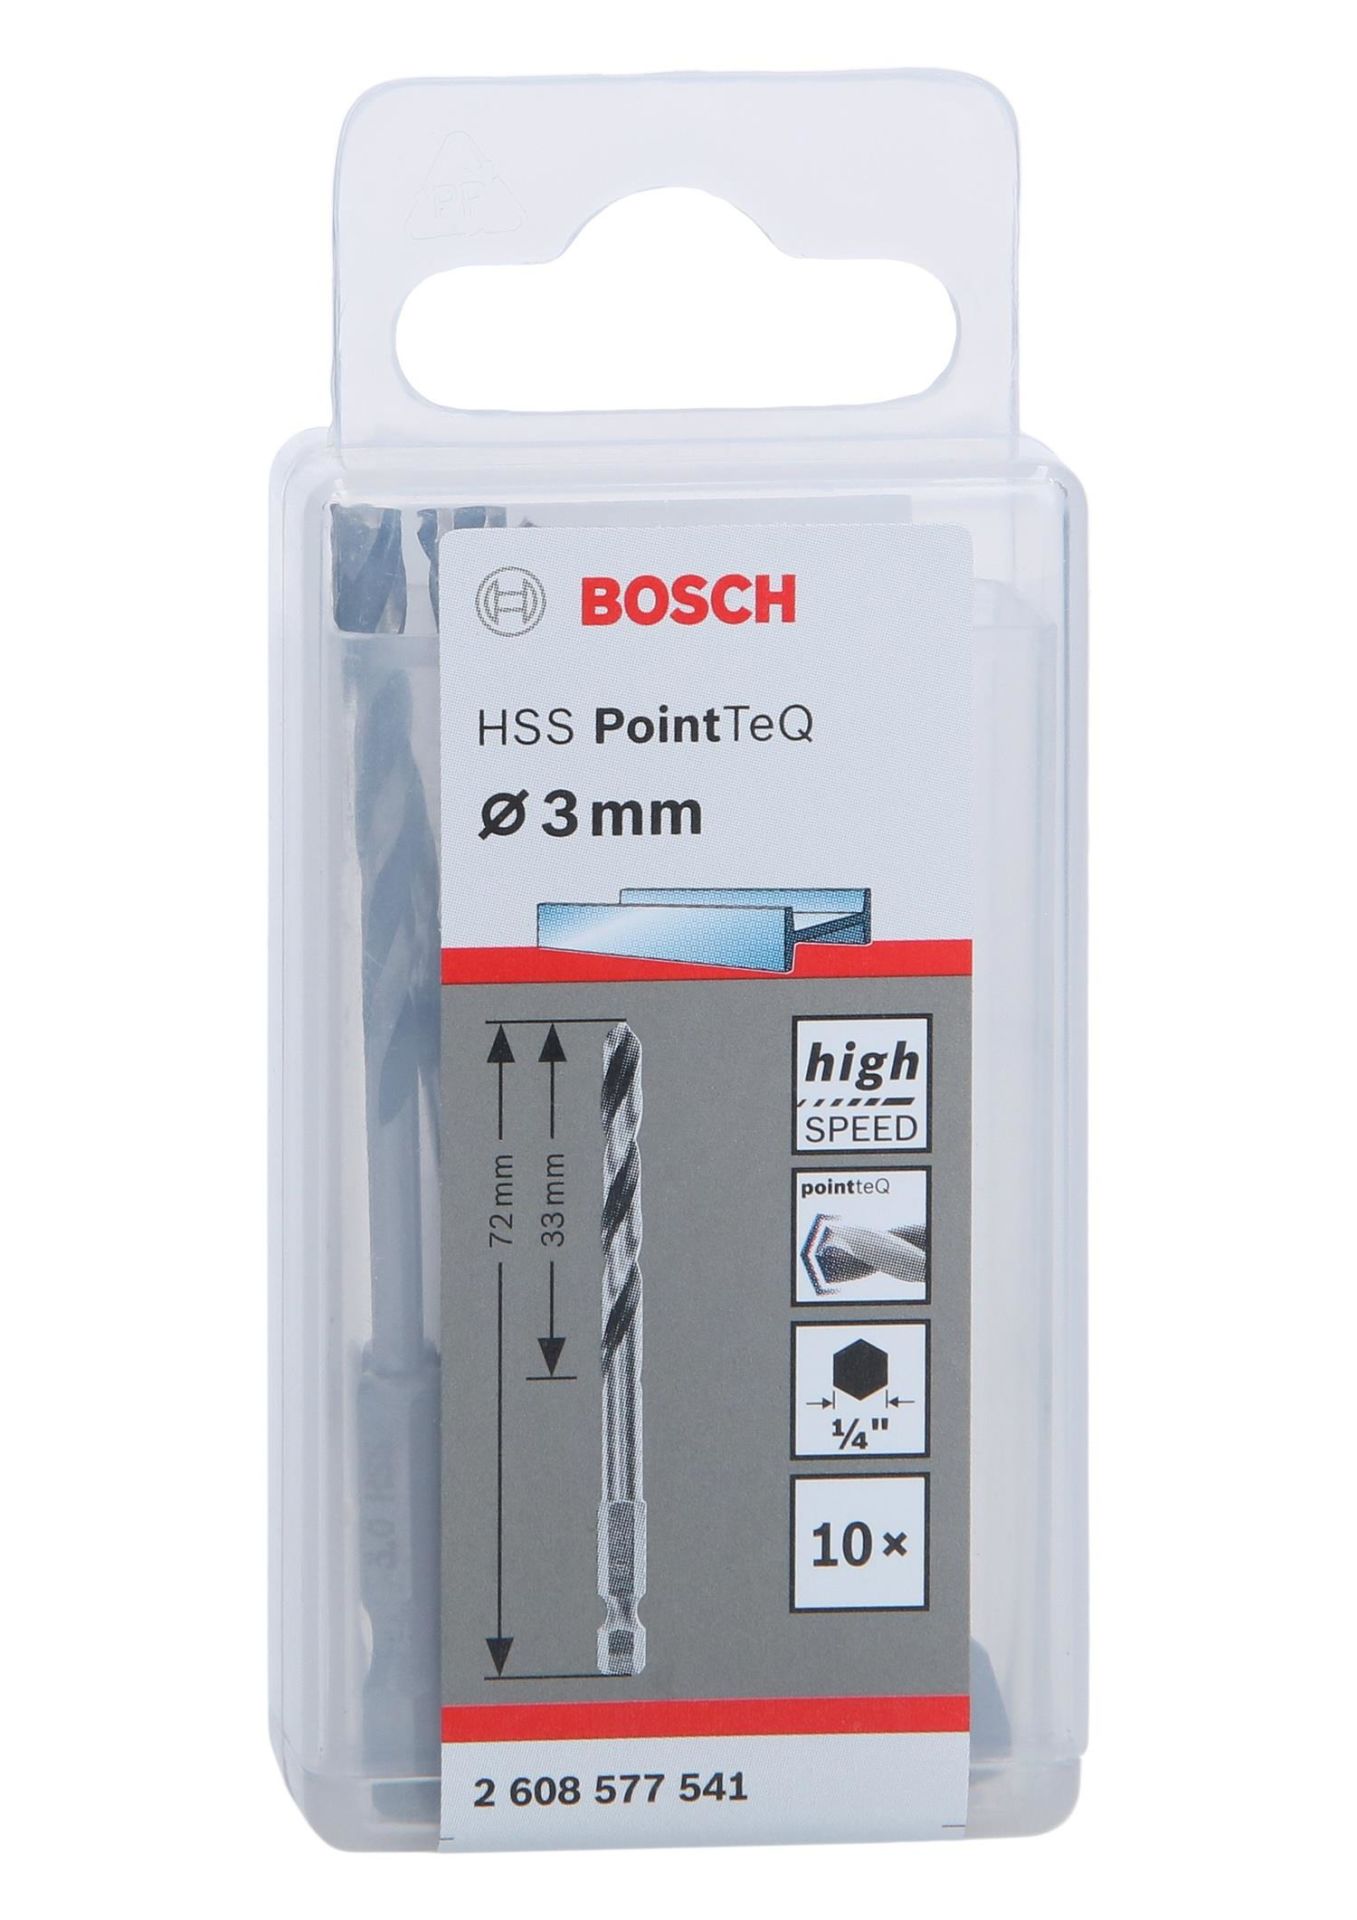 PoinTeQ 3mm 1/4 Adap. Metal Matkap Ucu 10'lu 2608577541 Bosch